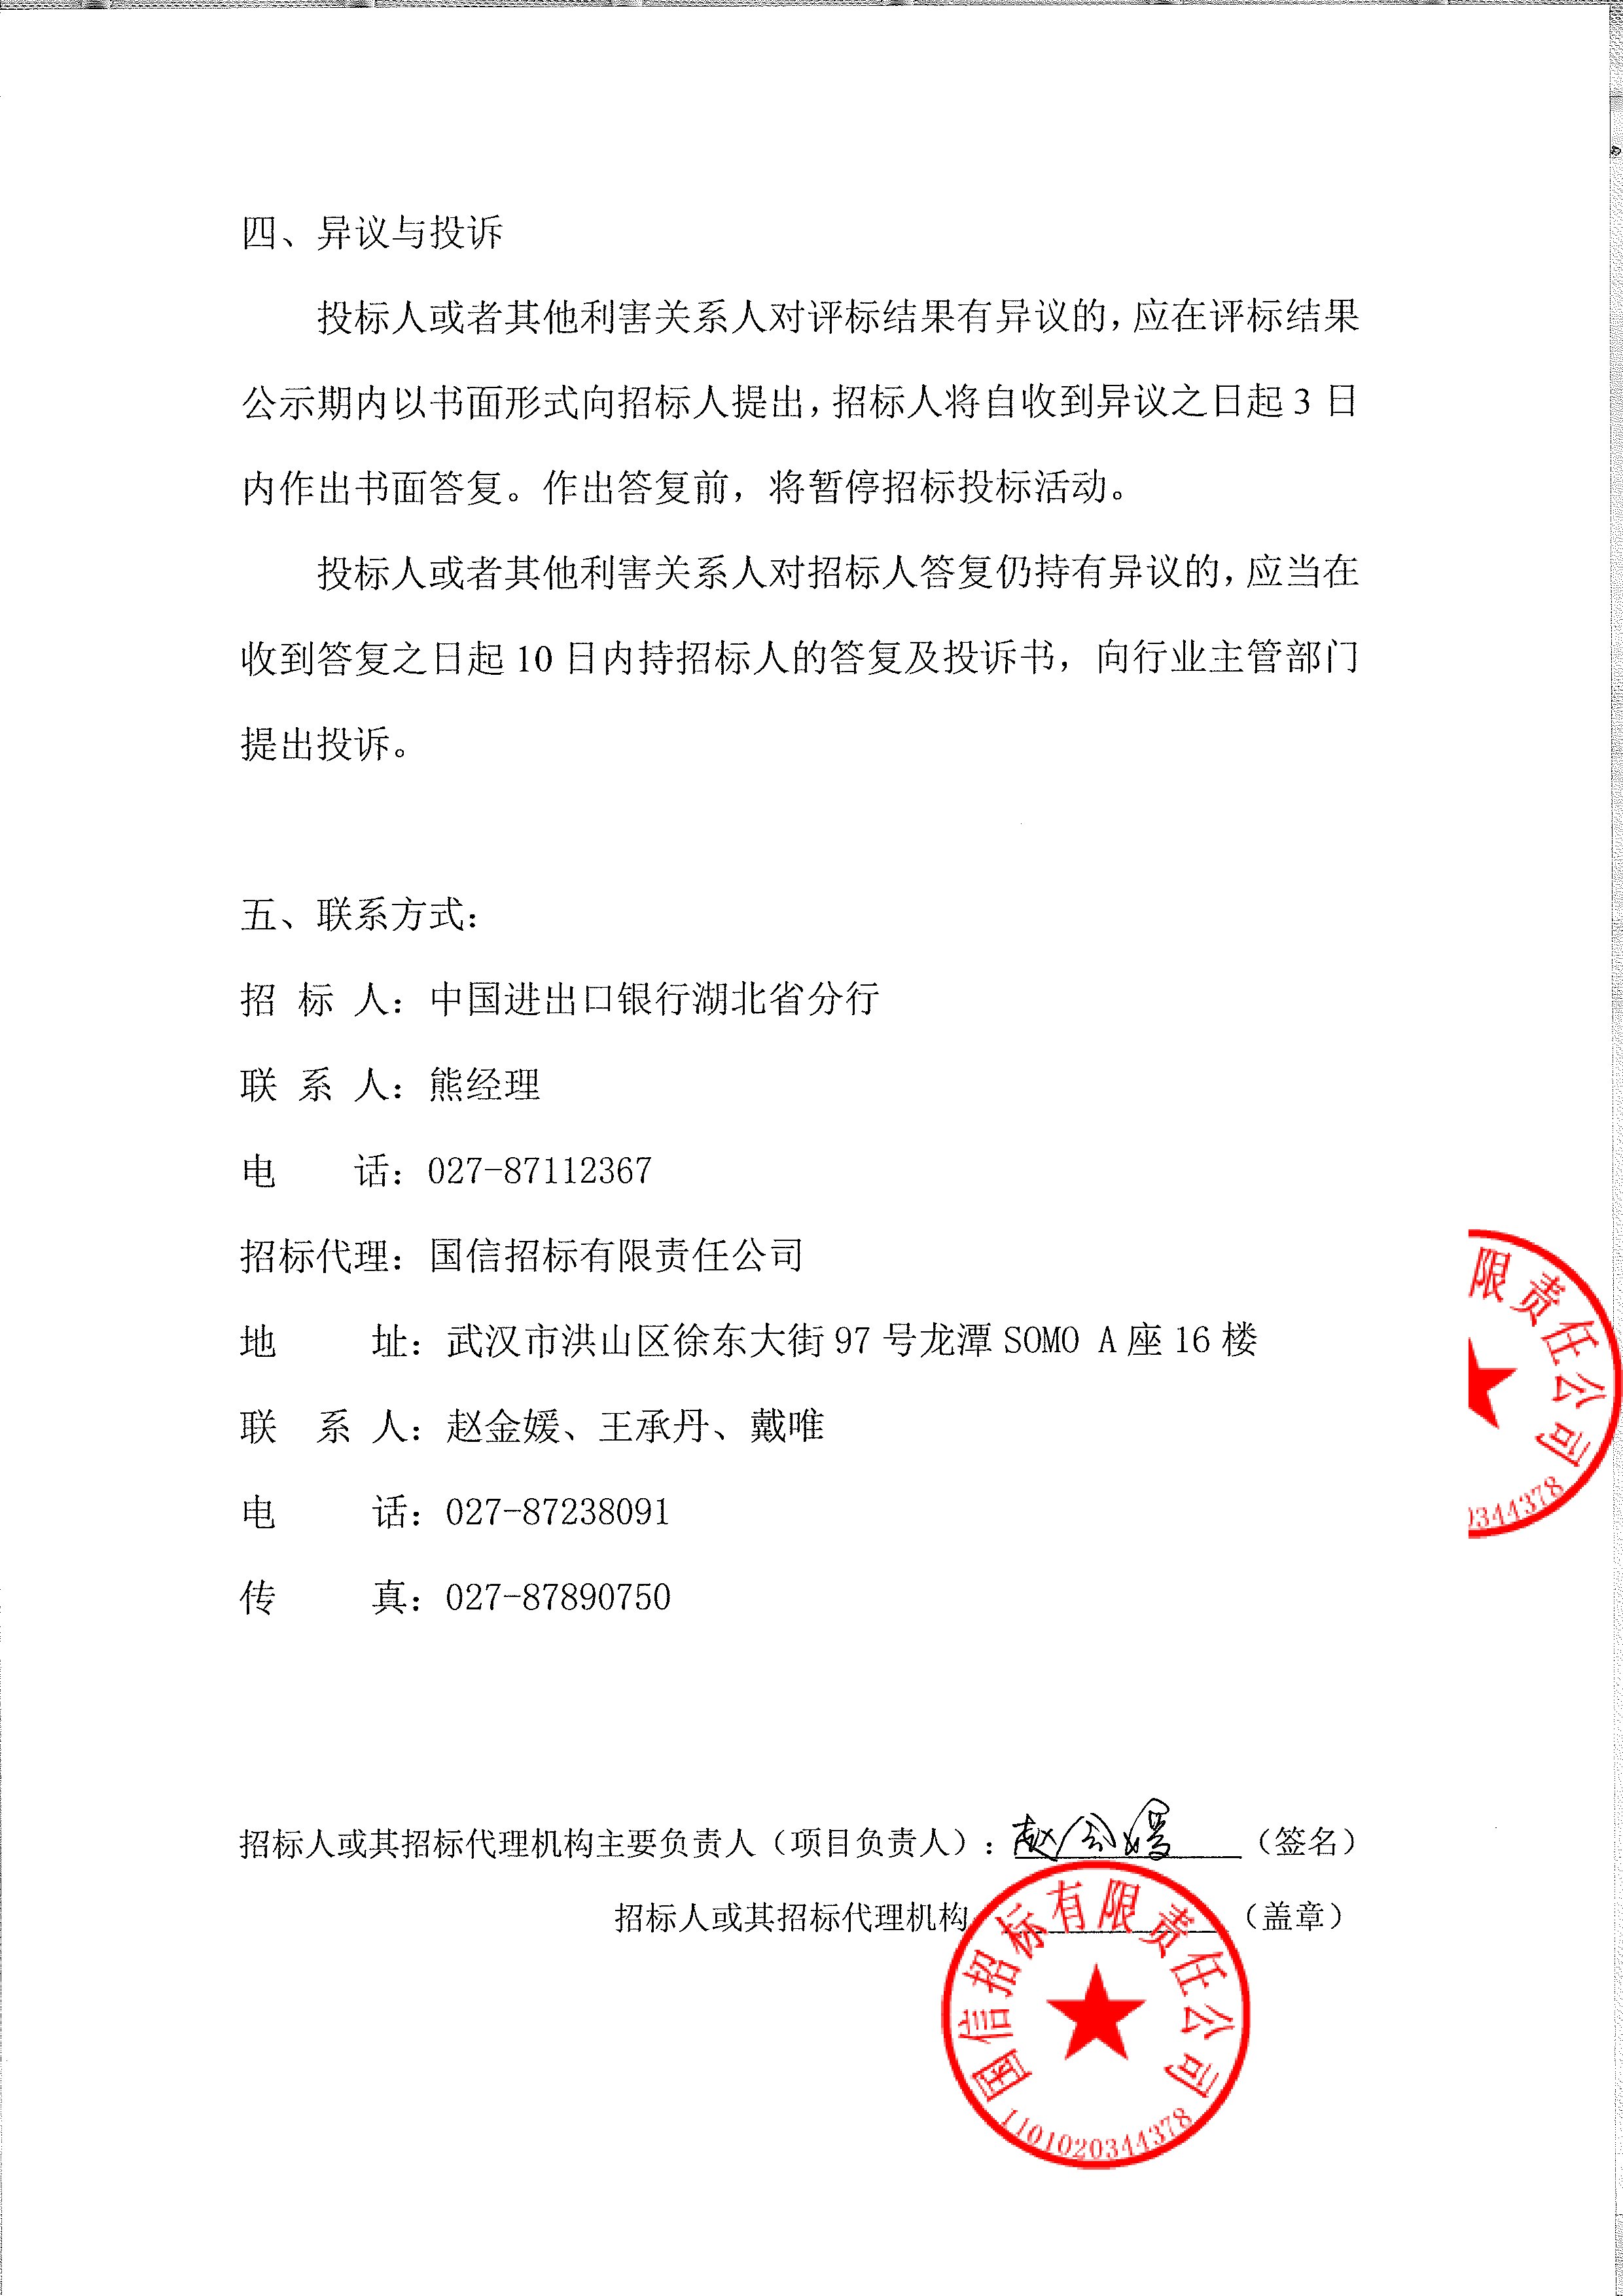 ob欧宝官网:
湖北银行宜昌分行2022年度食材采购及配送项目招标公告
